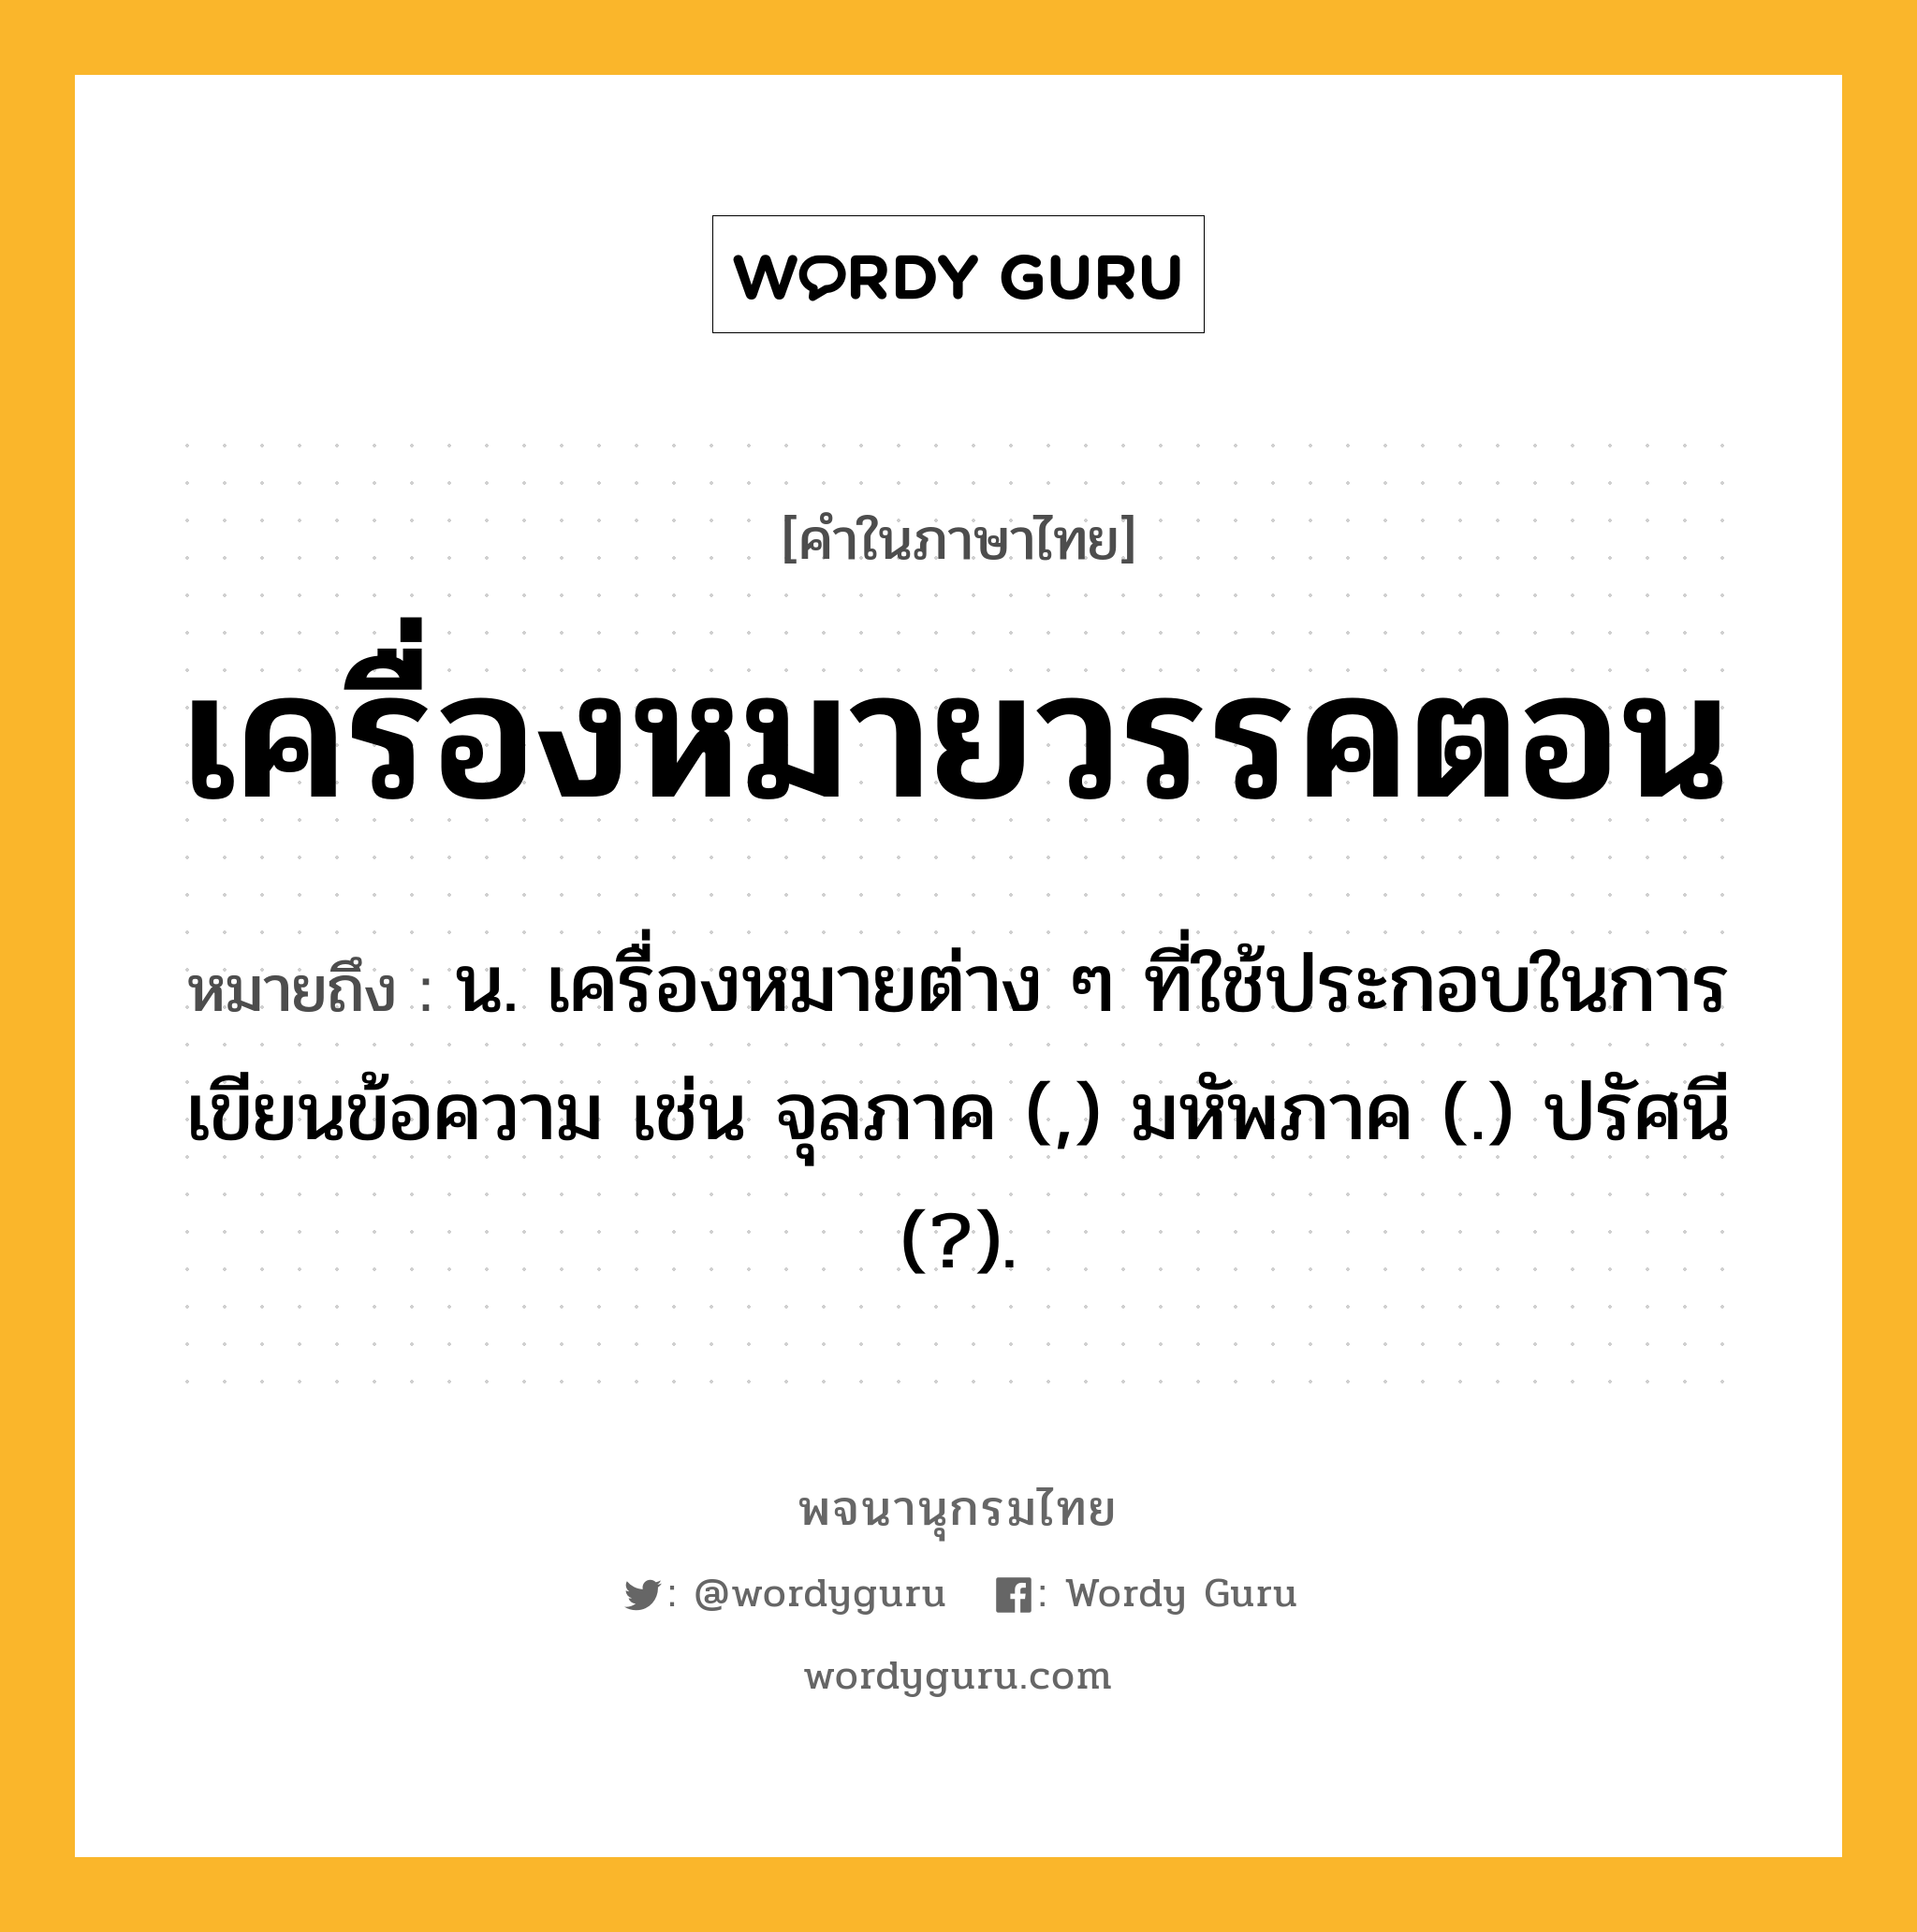 เครื่องหมายวรรคตอน ความหมาย หมายถึงอะไร?, คำในภาษาไทย เครื่องหมายวรรคตอน หมายถึง น. เครื่องหมายต่าง ๆ ที่ใช้ประกอบในการเขียนข้อความ เช่น จุลภาค (,) มหัพภาค (.) ปรัศนี (?).